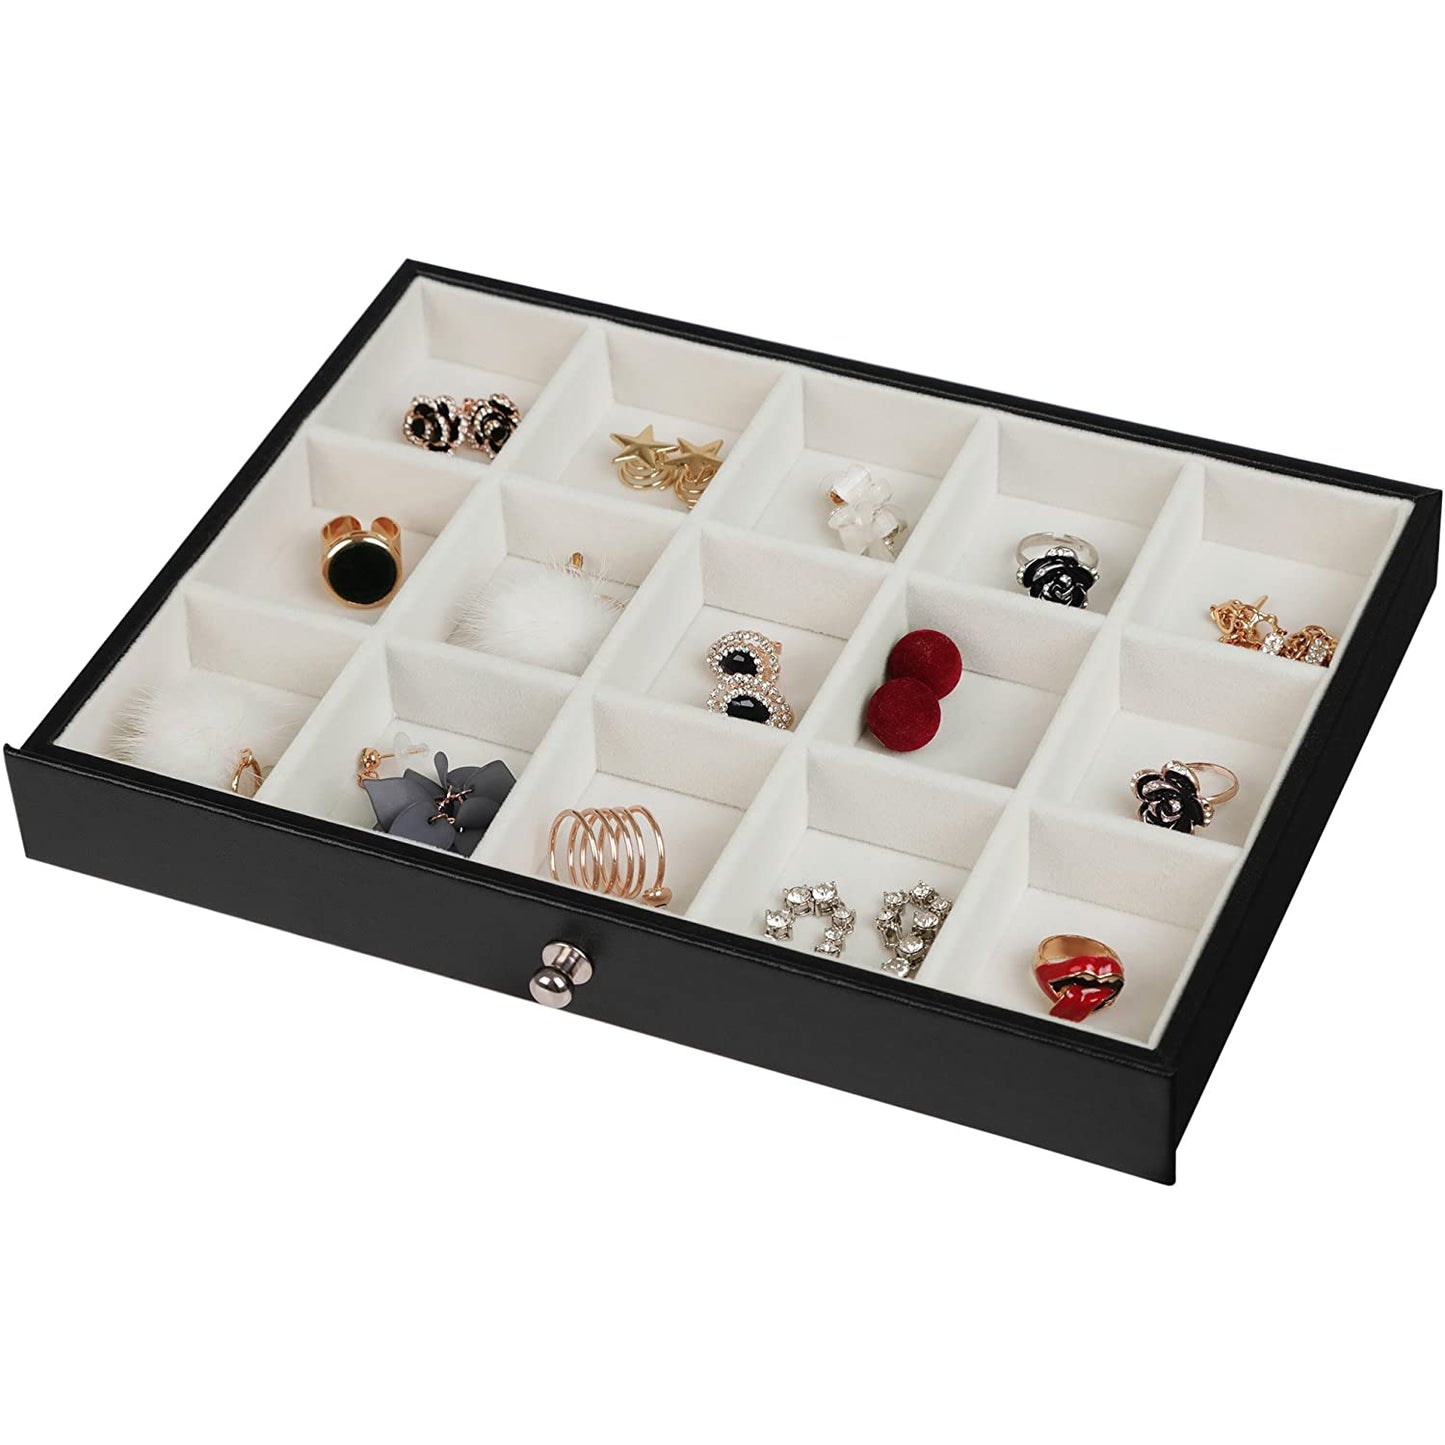 Boîte à bijoux de Nancy - XL - Boîte à bijoux - Boîte à bijoux - Rangement bijoux